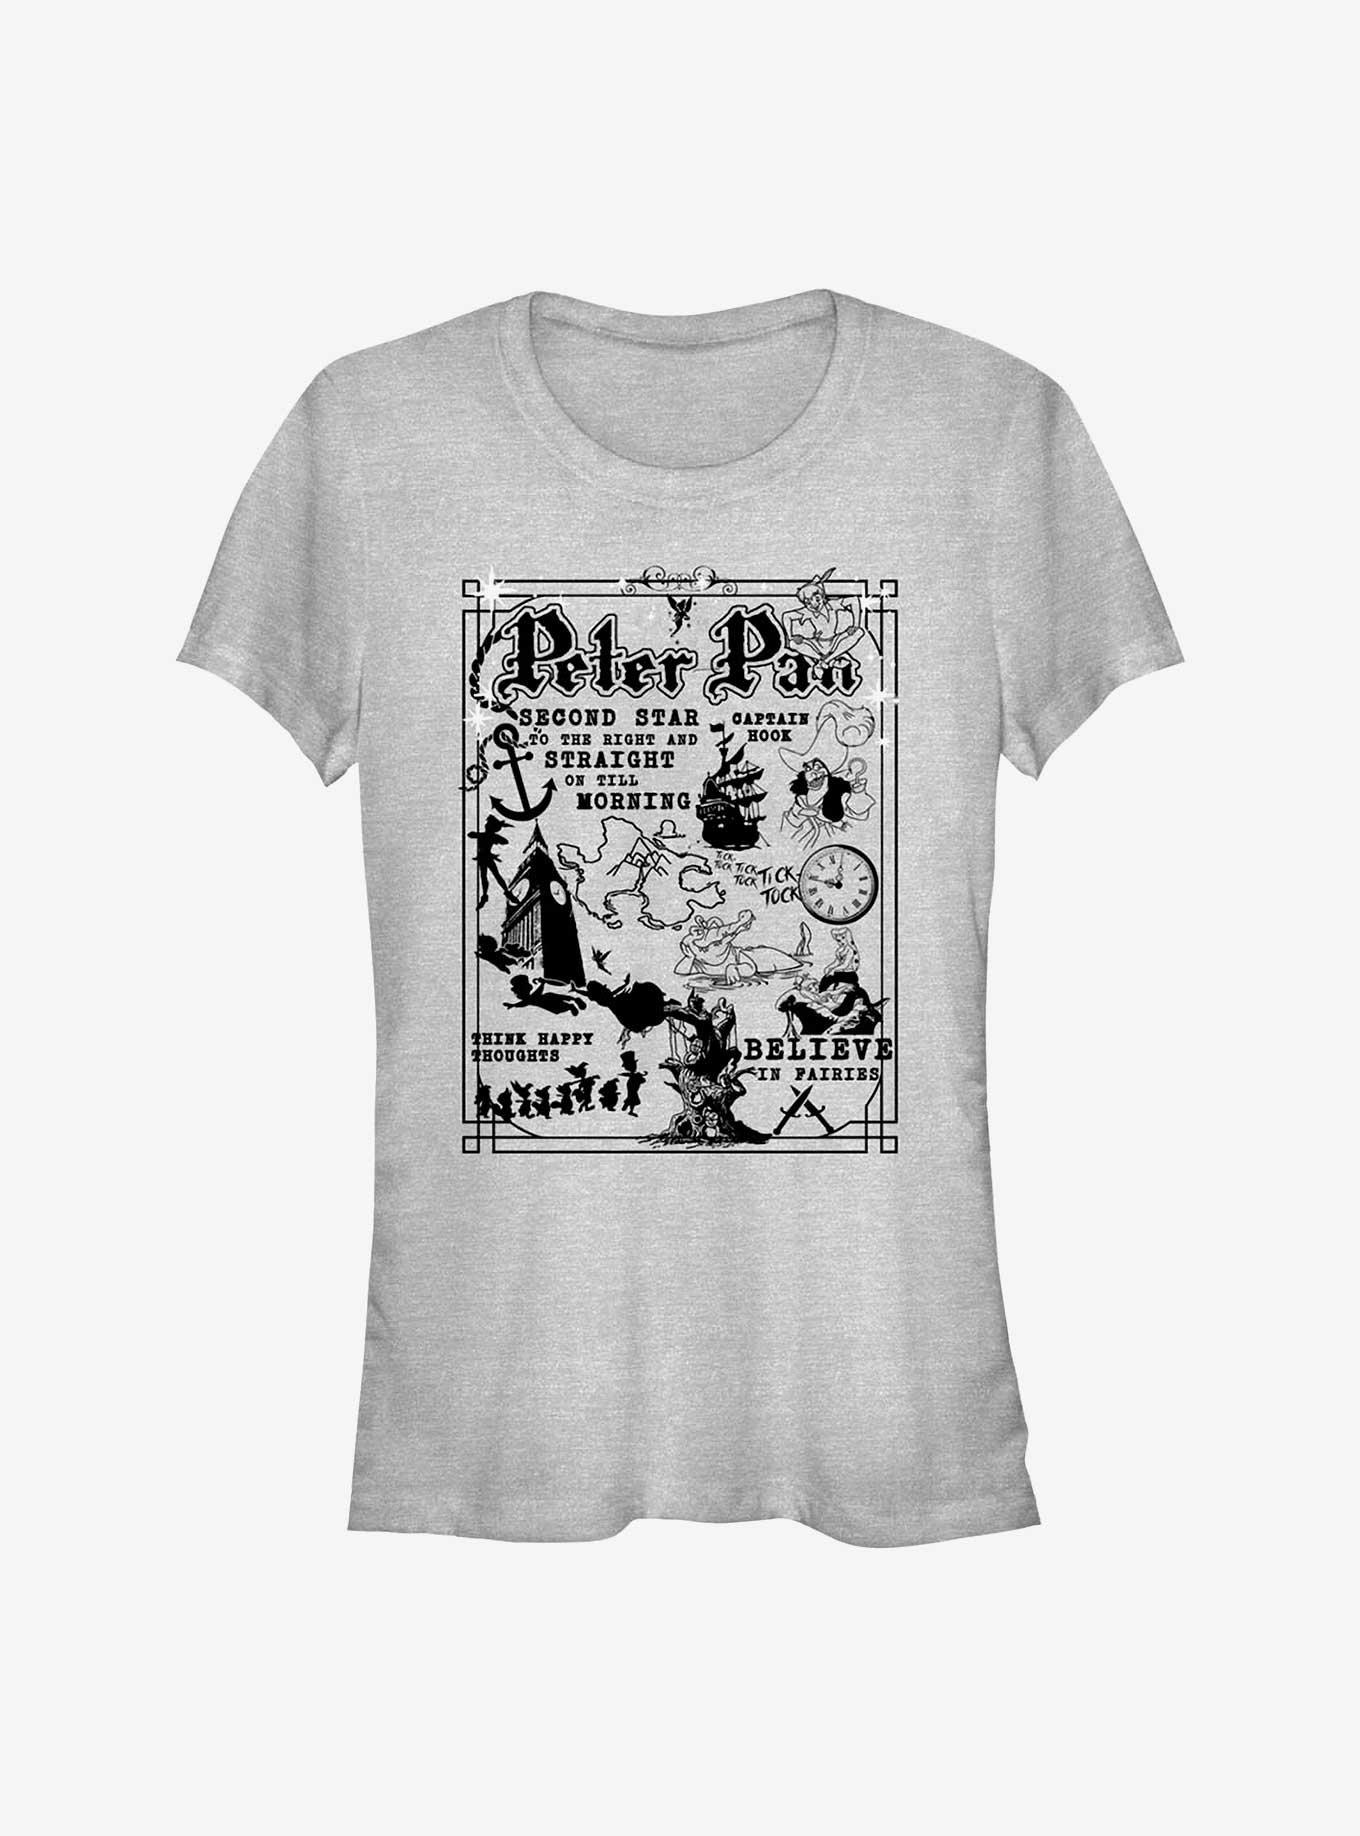 Hot Topic Disney Peter Pan Storytelling Poster Girls T-Shirt